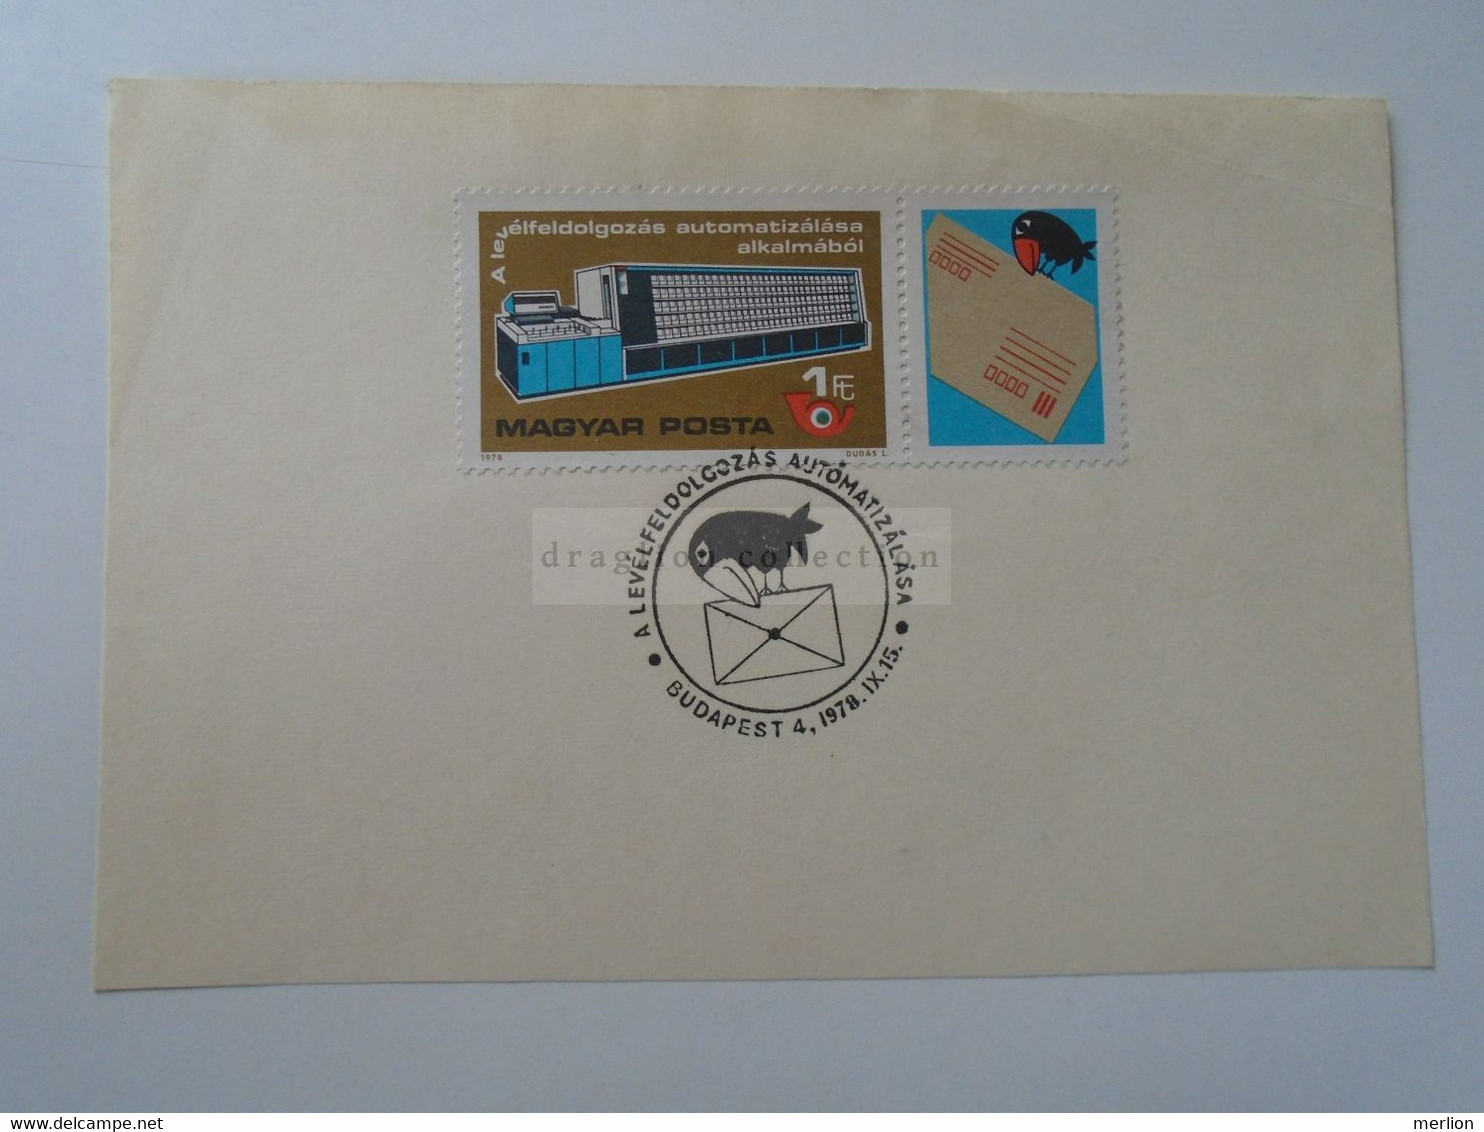 D187066   HUNGARY  Postmark     MAGYAR POSTA   - Hungarian Post - A Levélfeldolgozás Automatizálása Budapest 1978 - Marcophilie